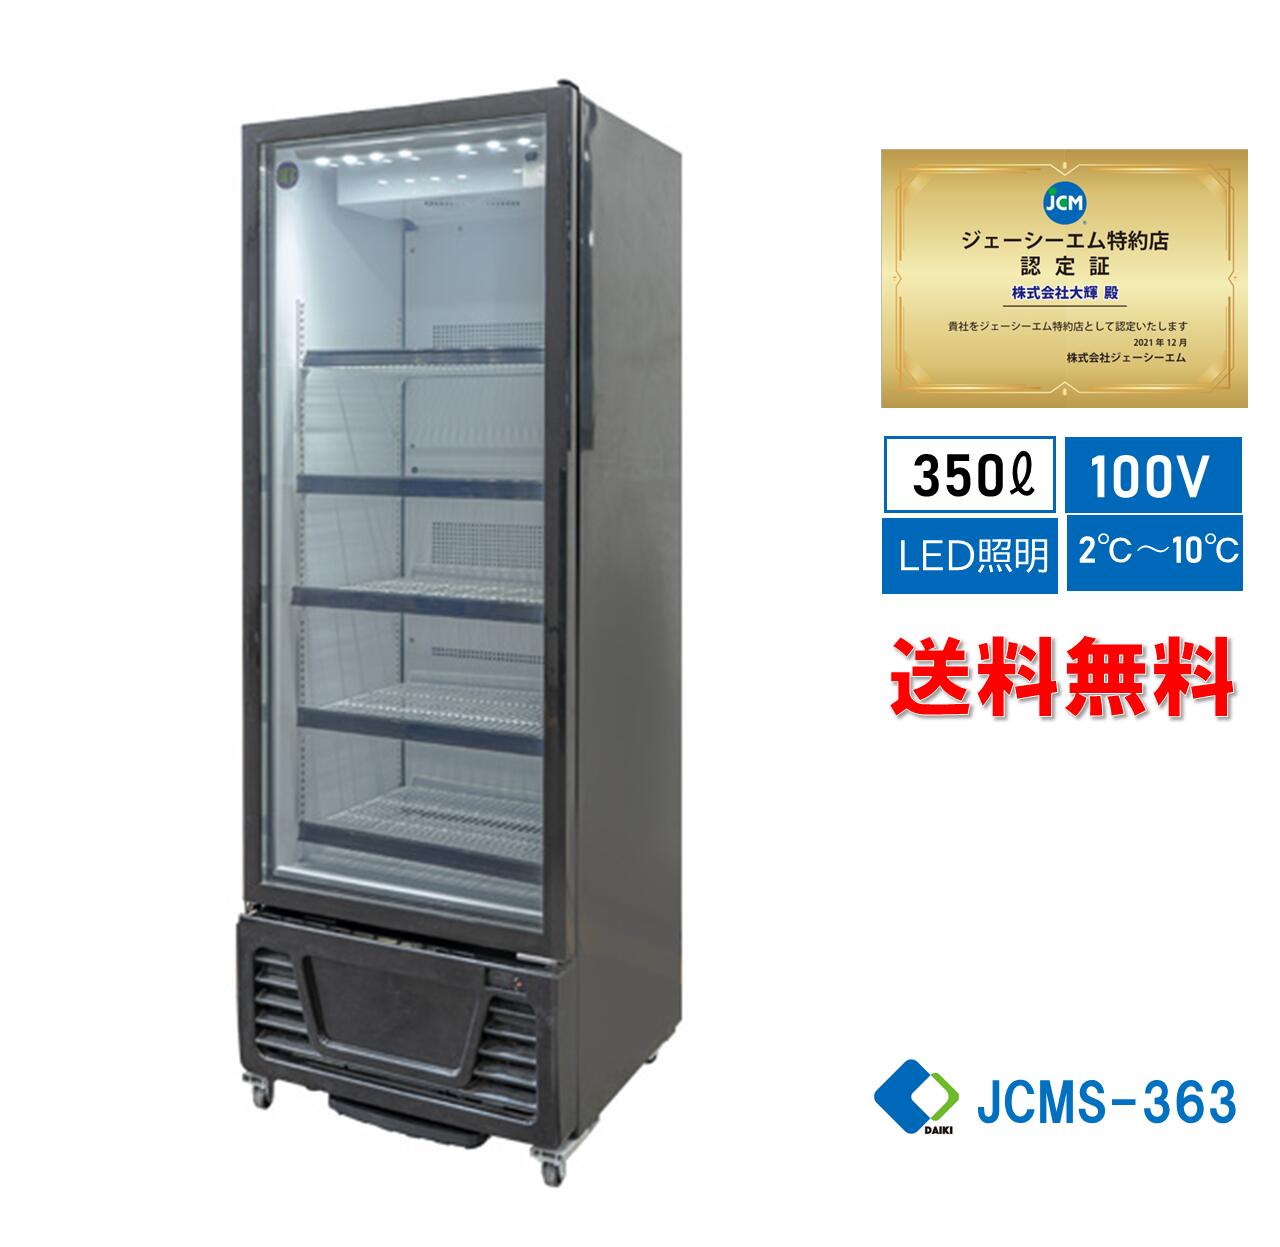 ☆大幅値下セール☆業務用 JCM RIT タテ型 冷蔵ショーケース 冷蔵庫